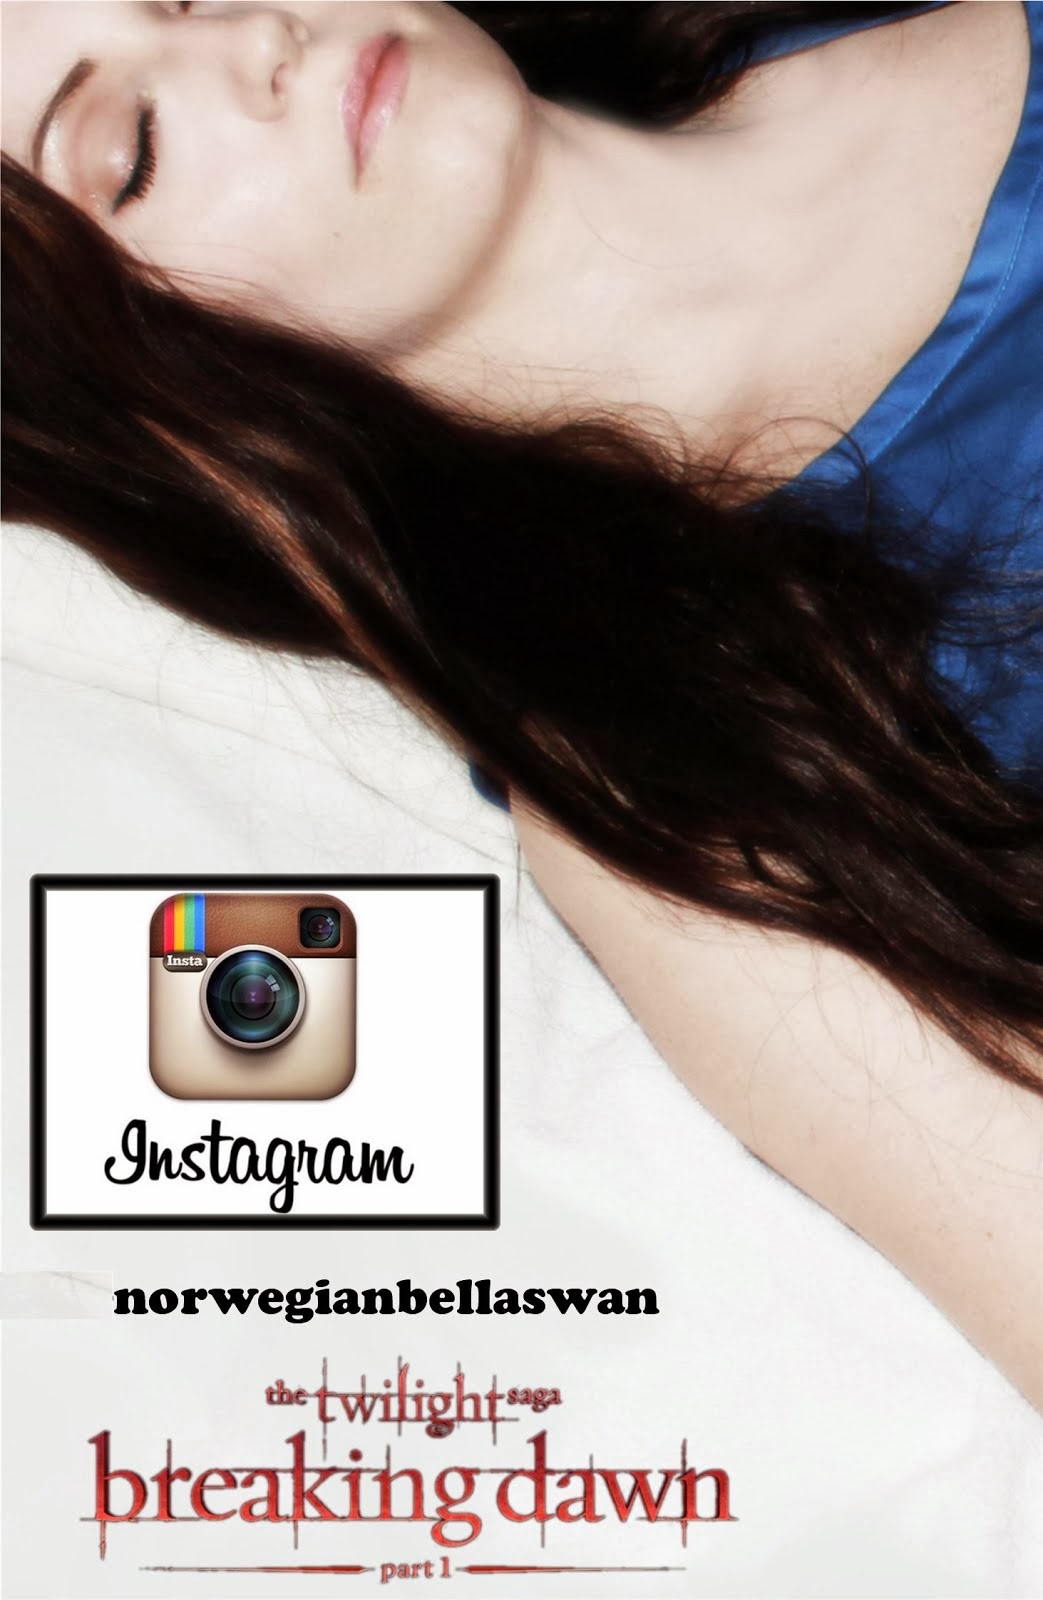 Følg meg på instagram: norwegianbellaswan